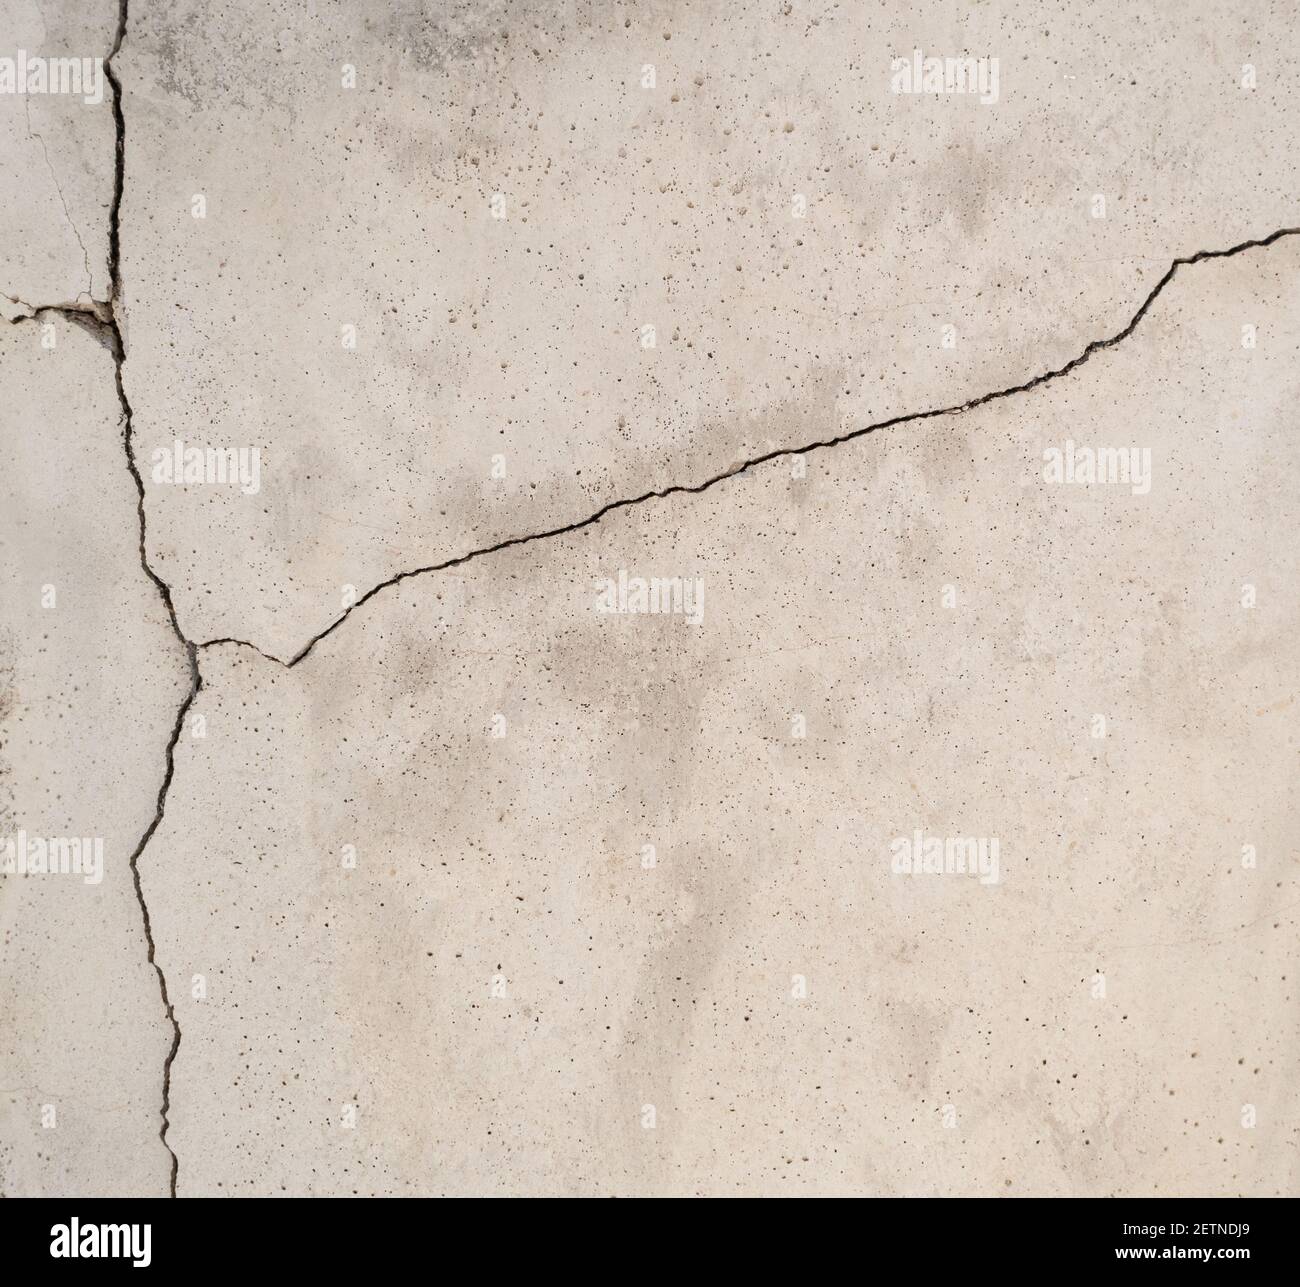 Fissurer la texture du ciment d'un fond de mur brisé Banque D'Images